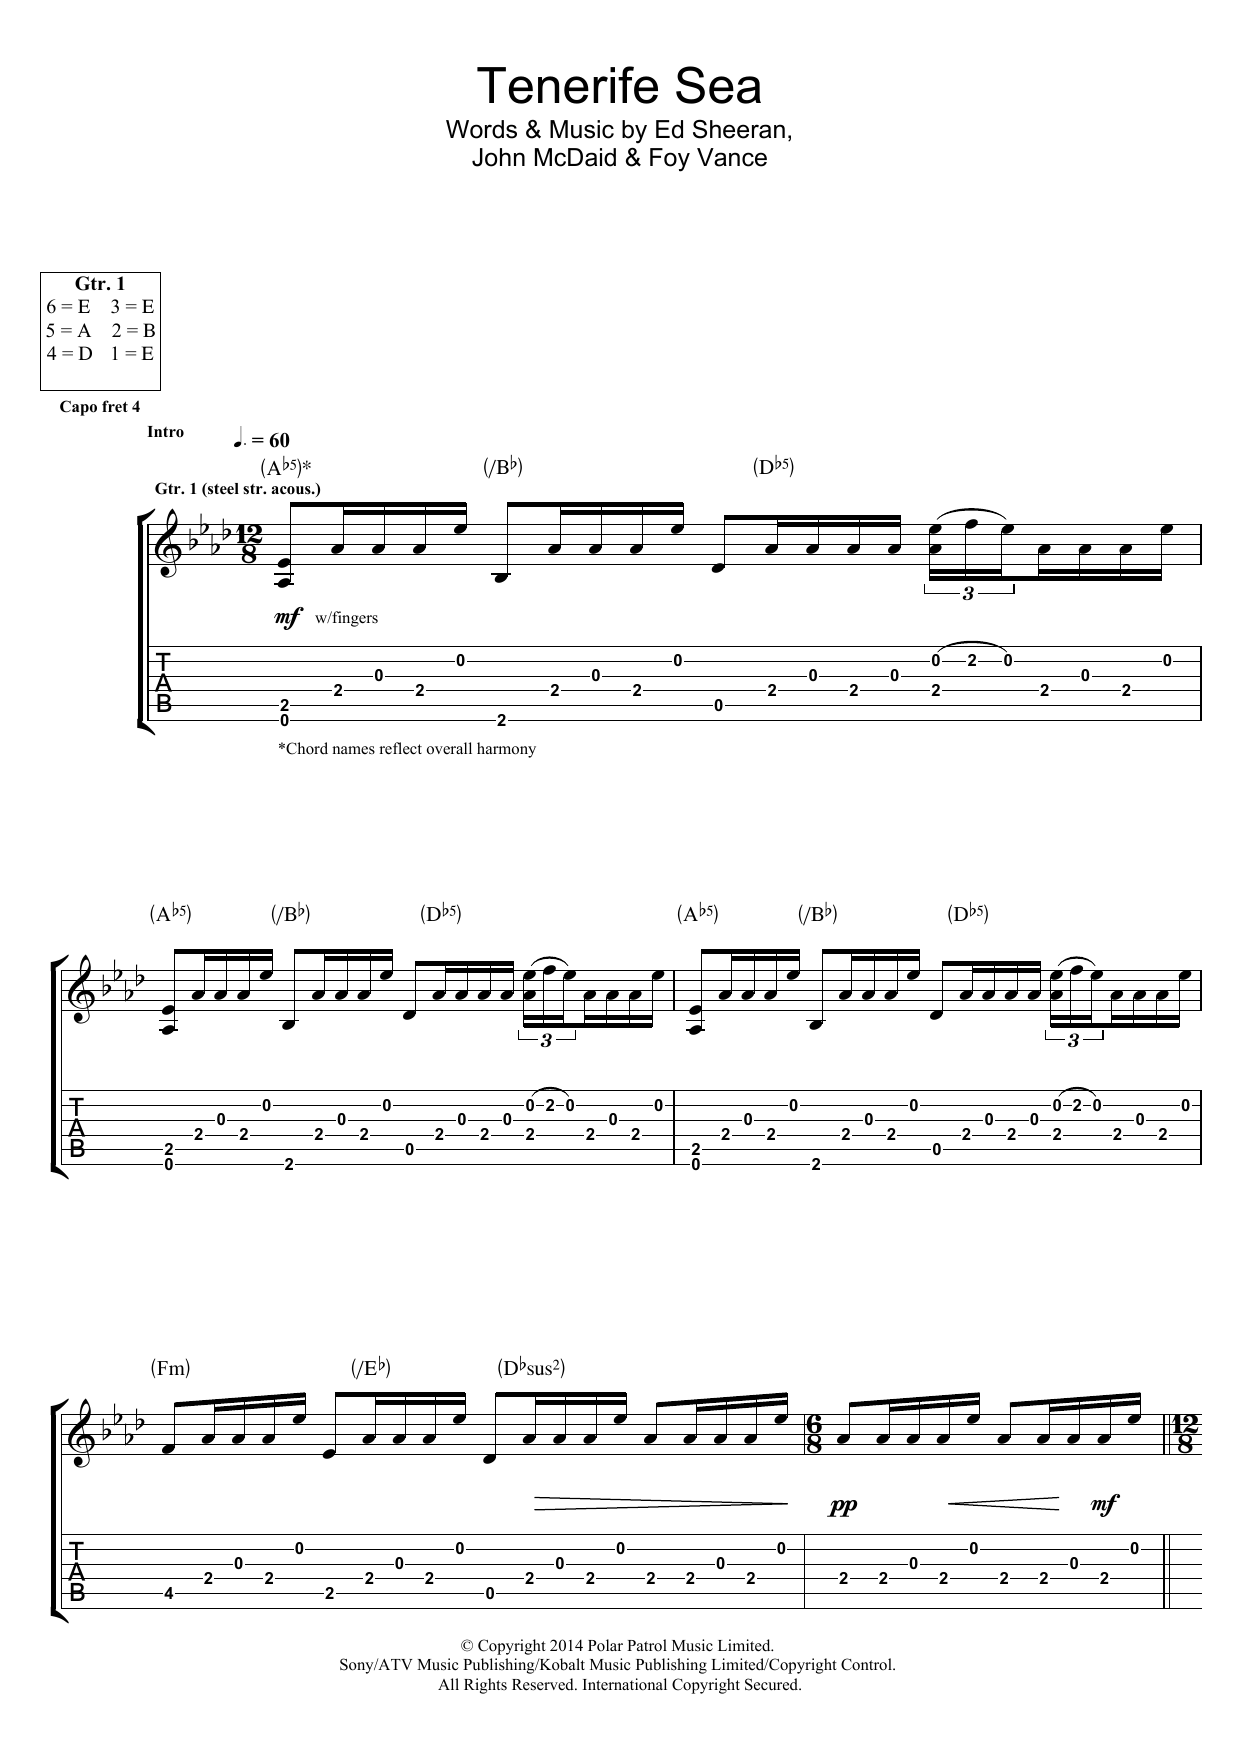 Ed Sheeran Tenerife Sea Sheet Music Notes & Chords for Lyrics & Chords - Download or Print PDF